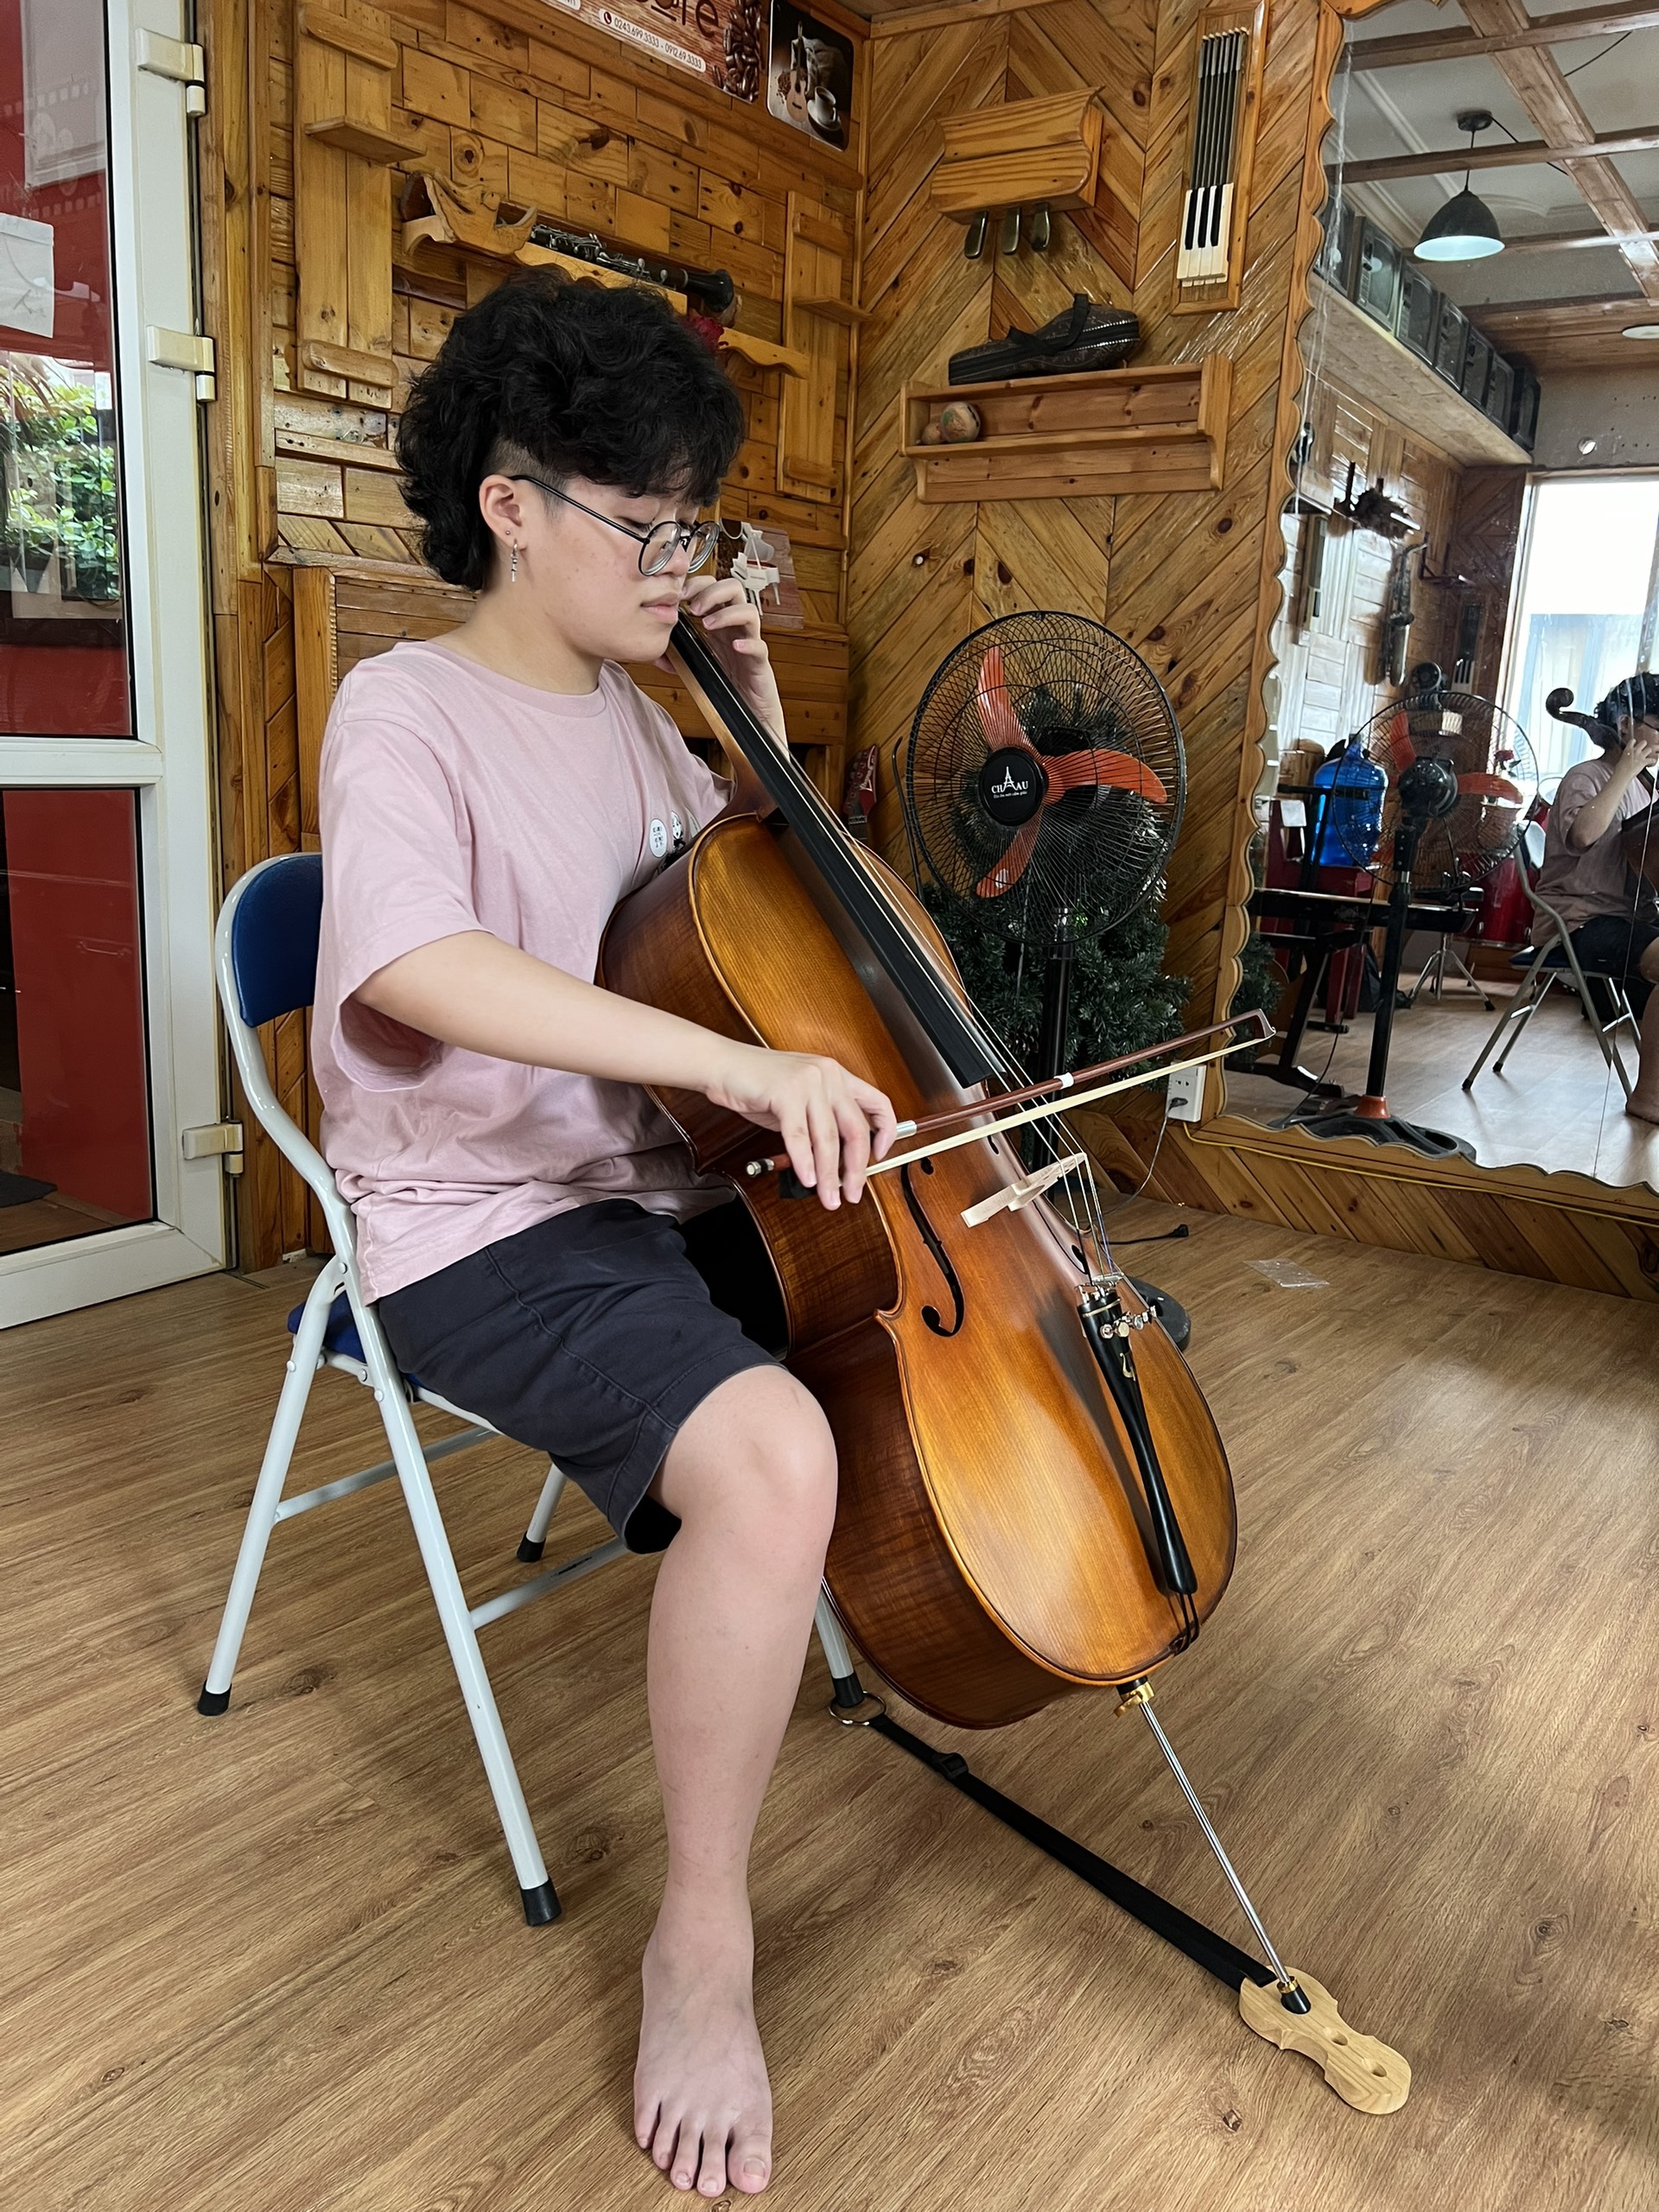 Cello( xen-lô)hay còn gọi là violoncolle (vi-o-long-xen) thuộc vĩ cầm